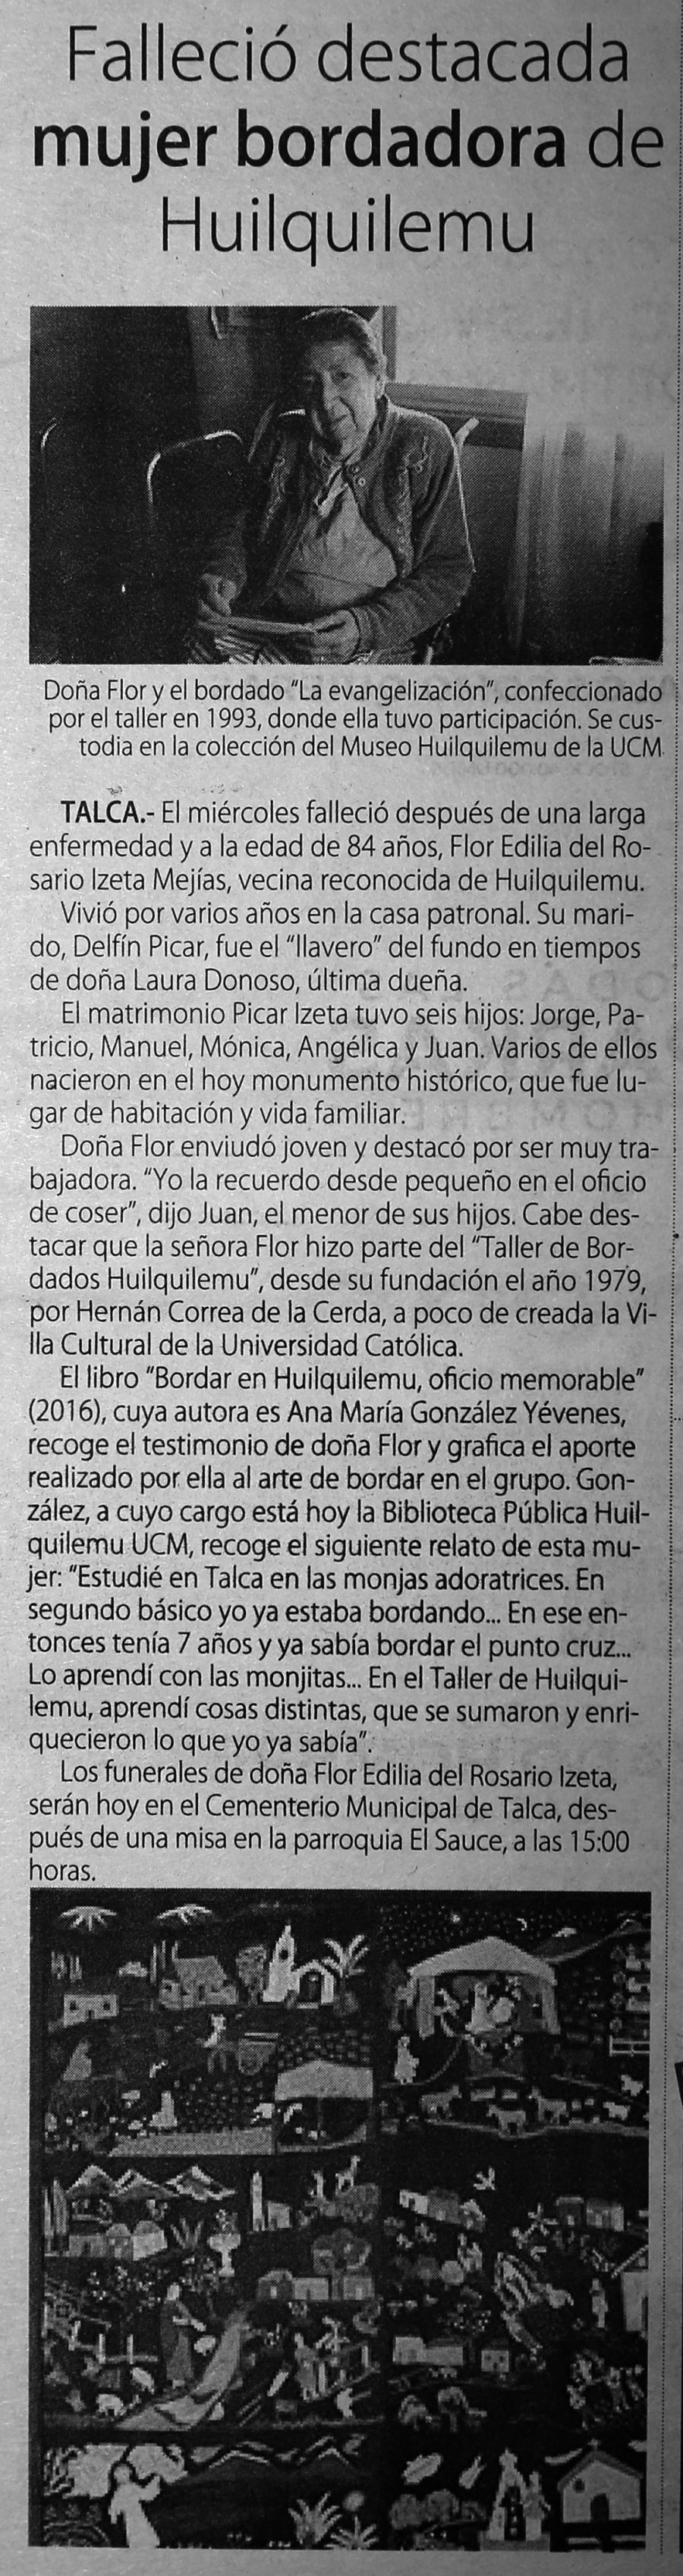 09 de junio en Diario El Centro: “Falleció destacada mujer bordadora de Huilquilemu”